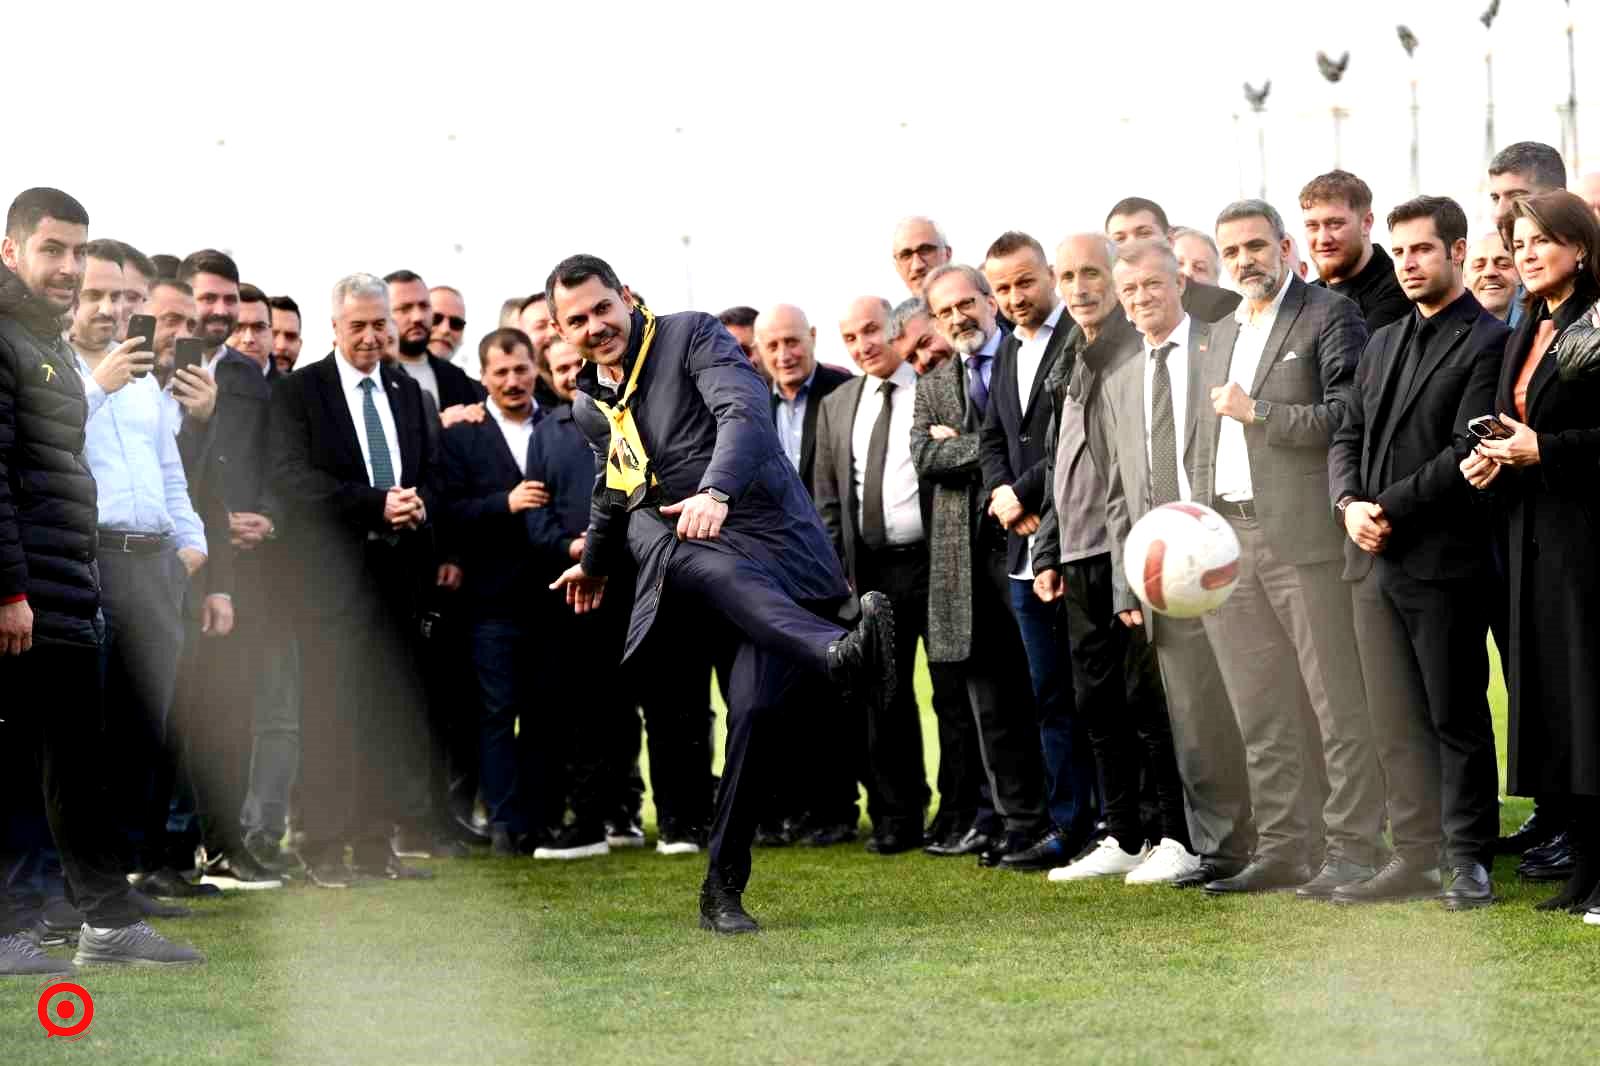 İstanbulspor Kulübü’nü ziyaret eden Murat Kurum: “İstanbul sporun baş şehri olacak”